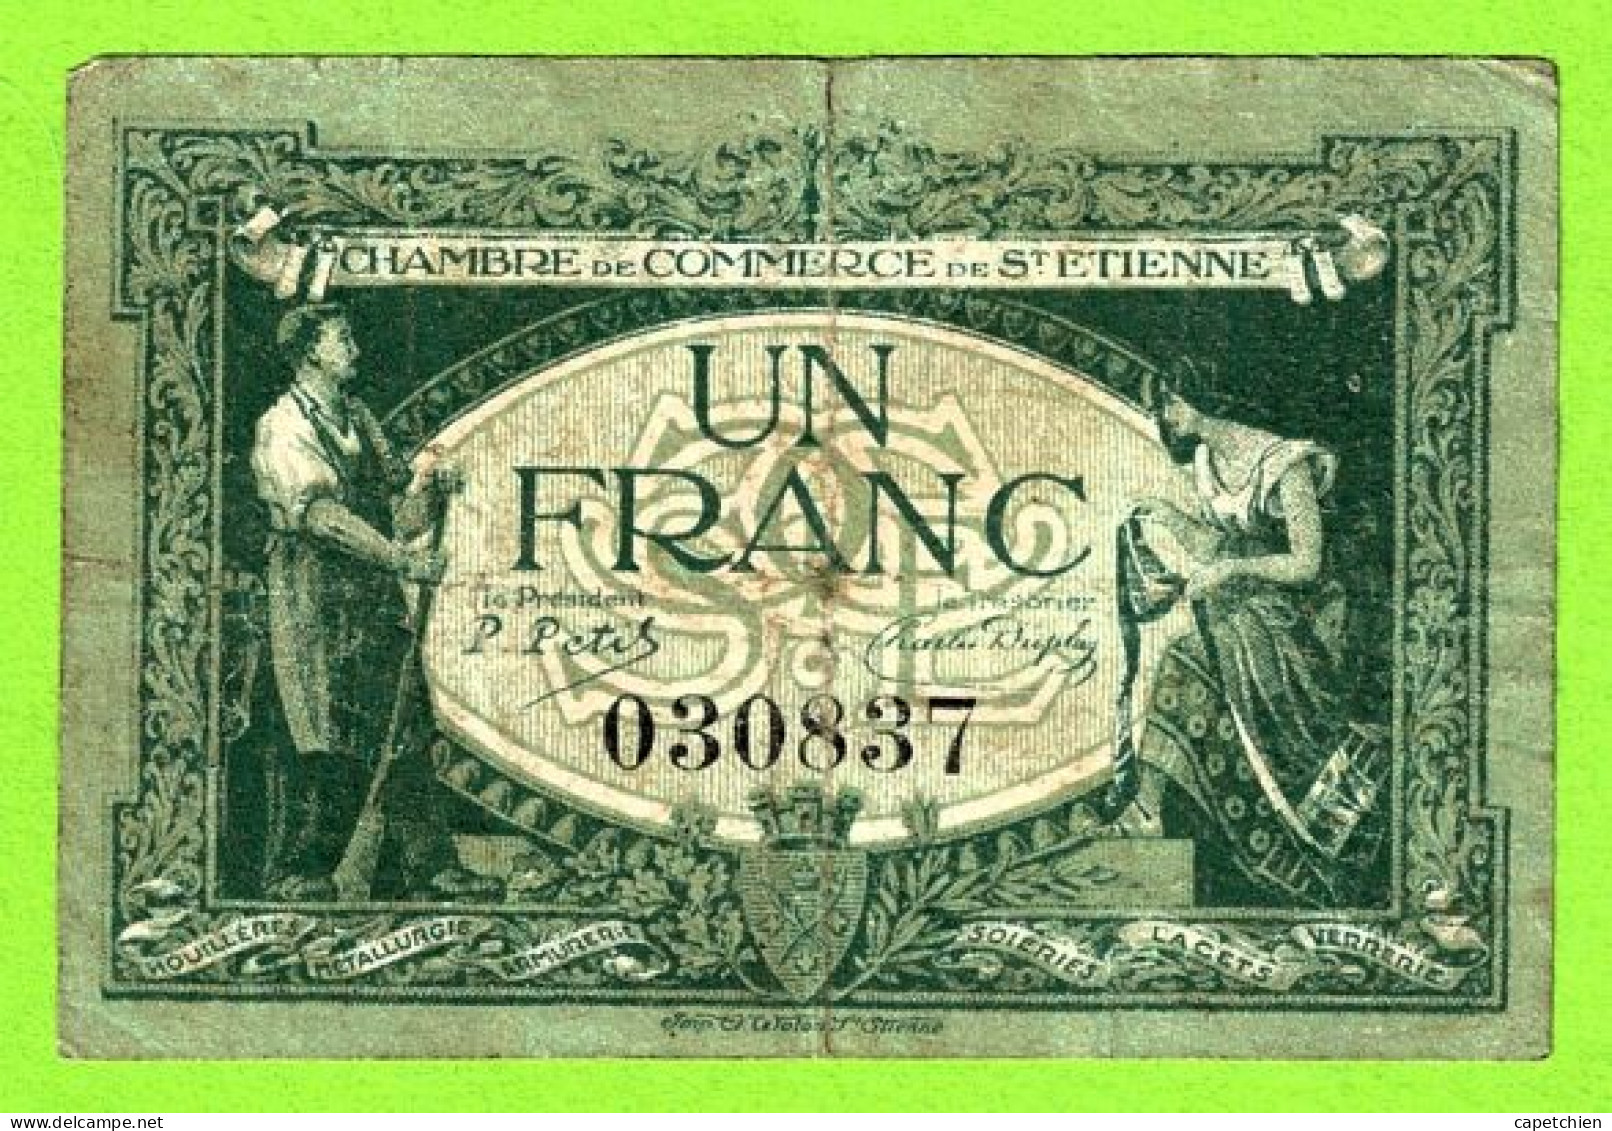 FRANCE / CHAMBRE De COMMERCE De SAINT ETIENNE / 1 FRANC / 12 JANVIER 1921 / N°030837 SERIE - Chambre De Commerce